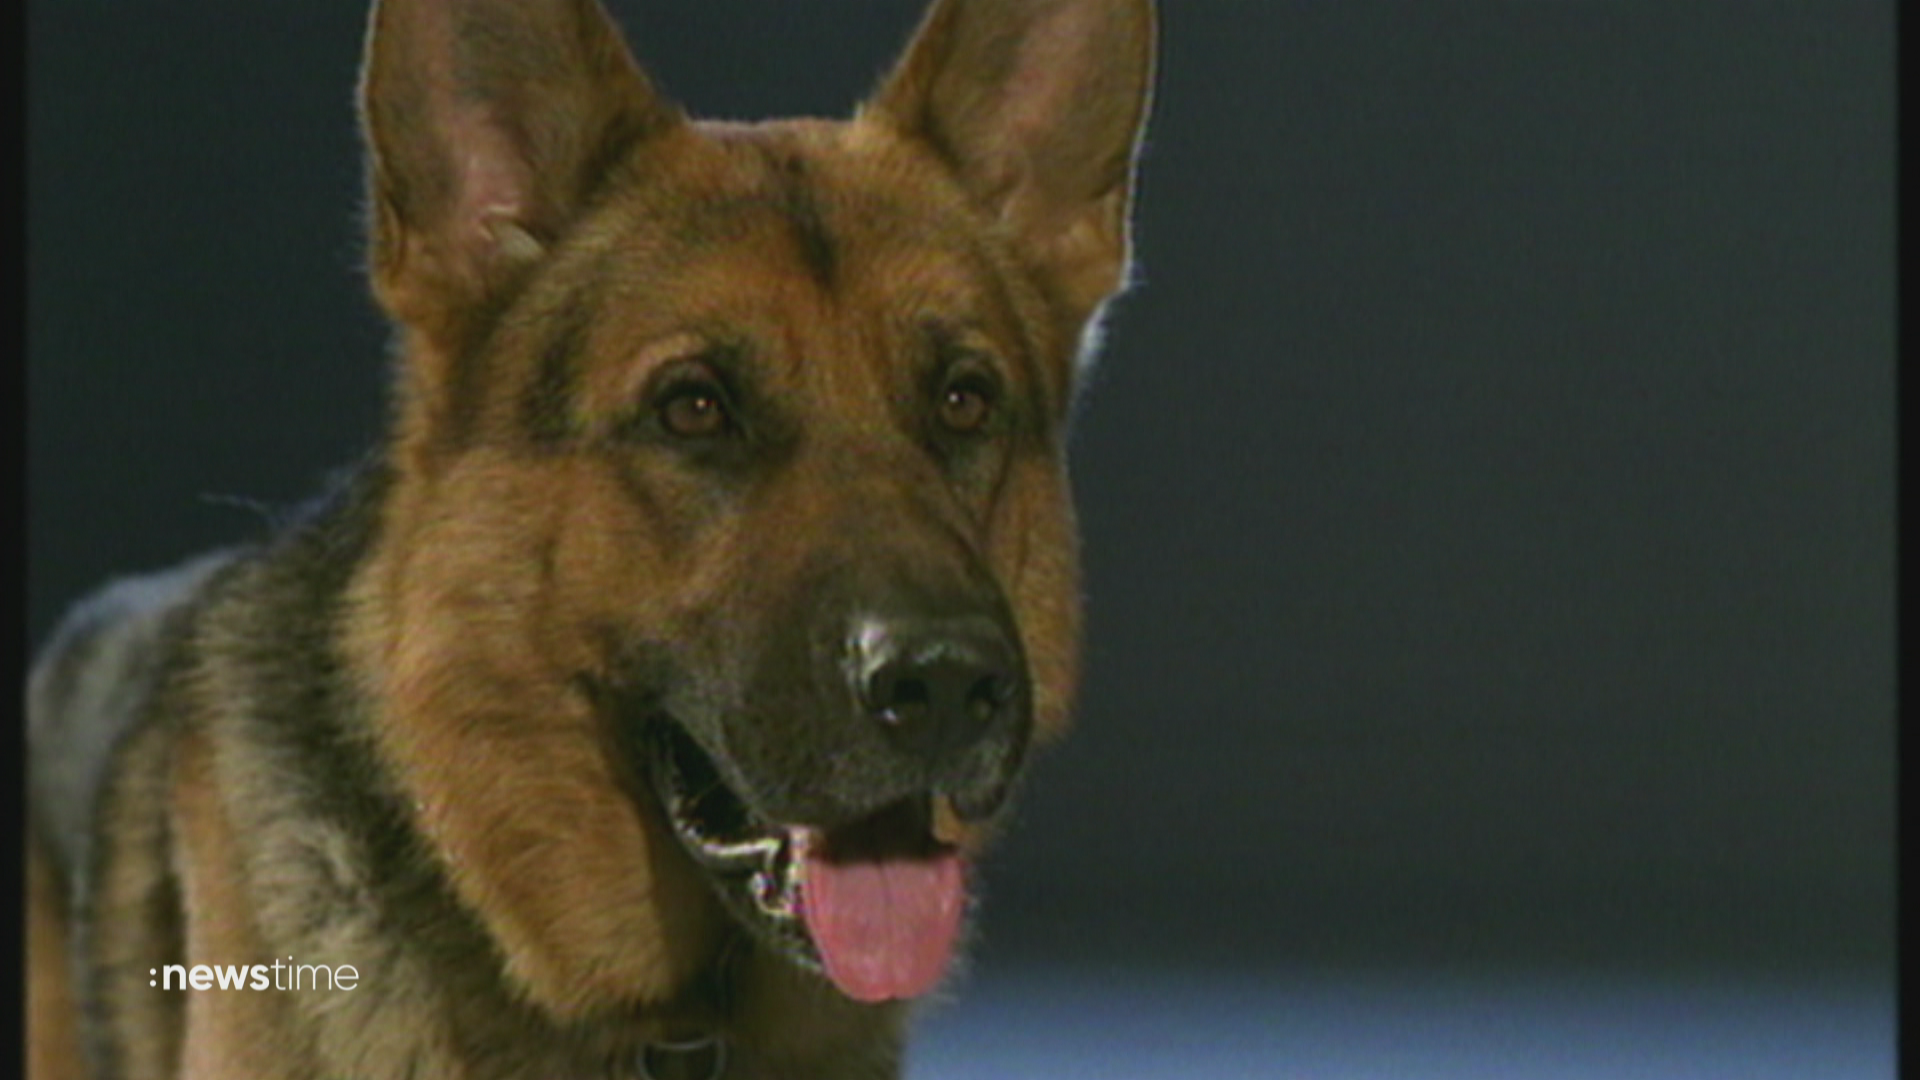 Jubiläum für den Schäferhund: Experte kritisiert Überzüchtung